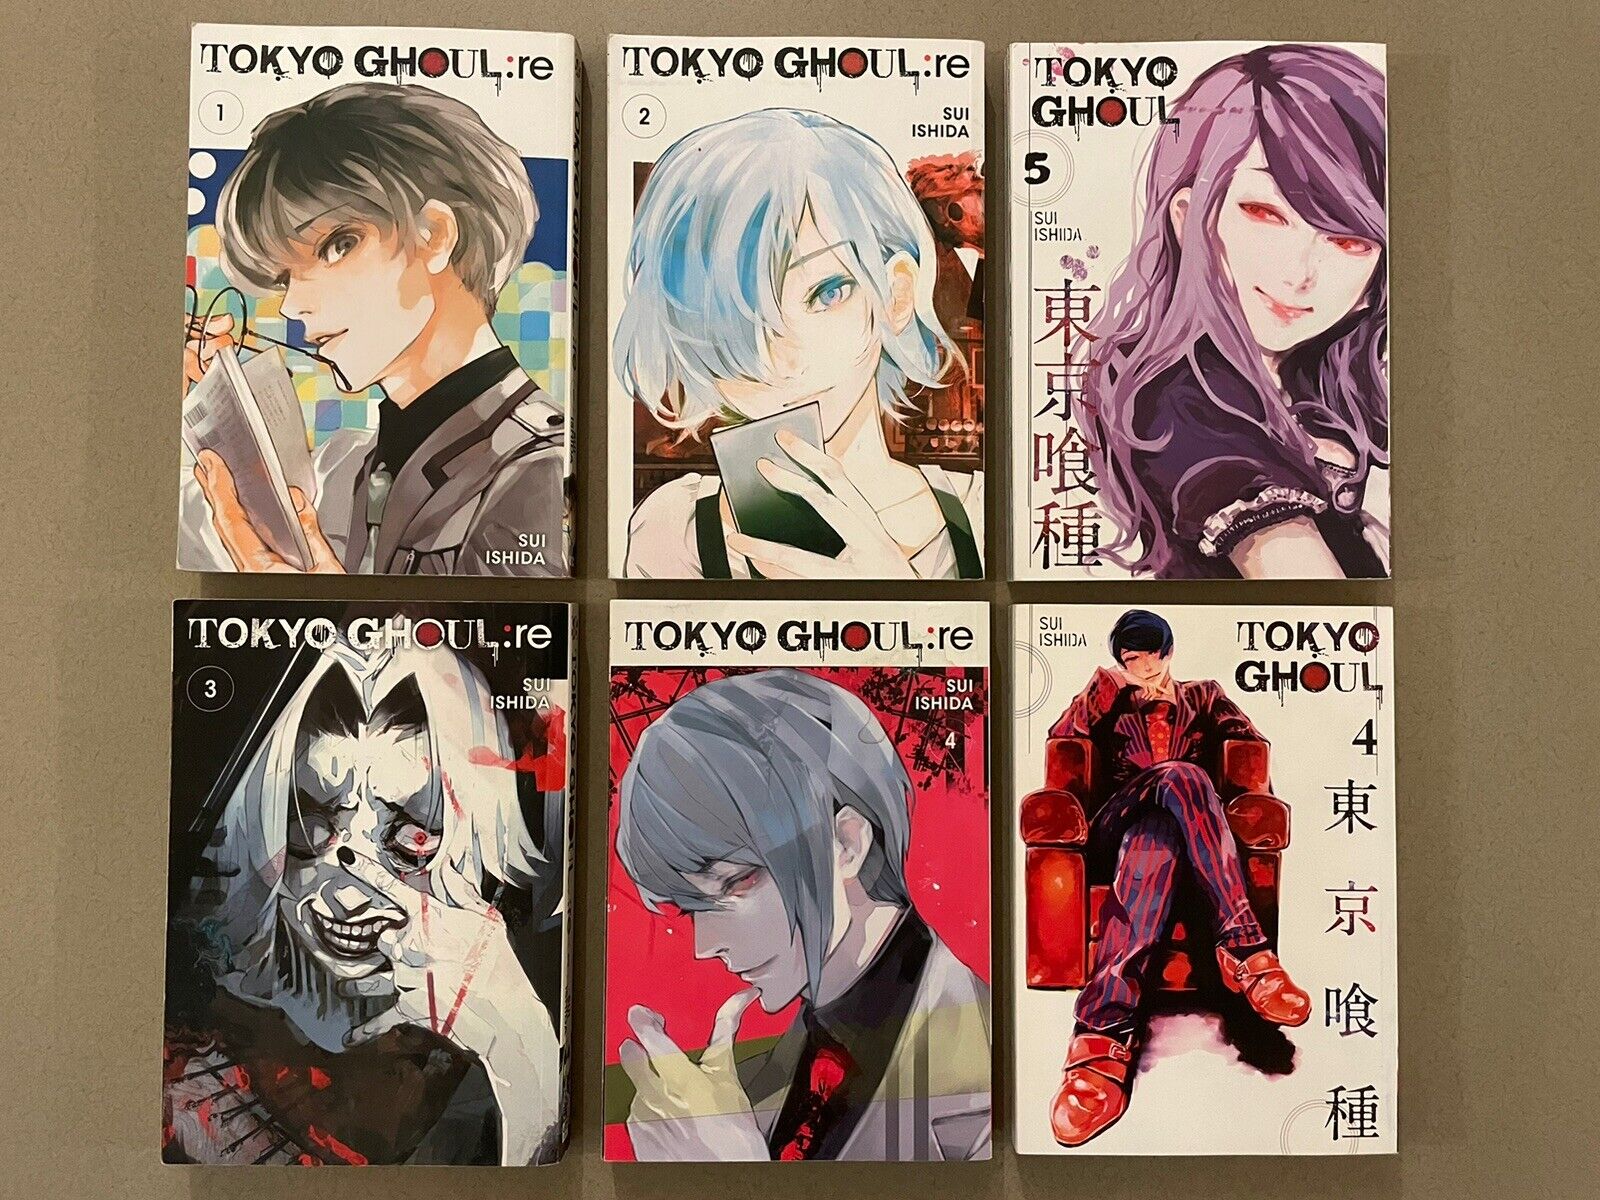 Tokyo Ghoul Manga - Volumes 1-5 - English - Viz Studio Manga